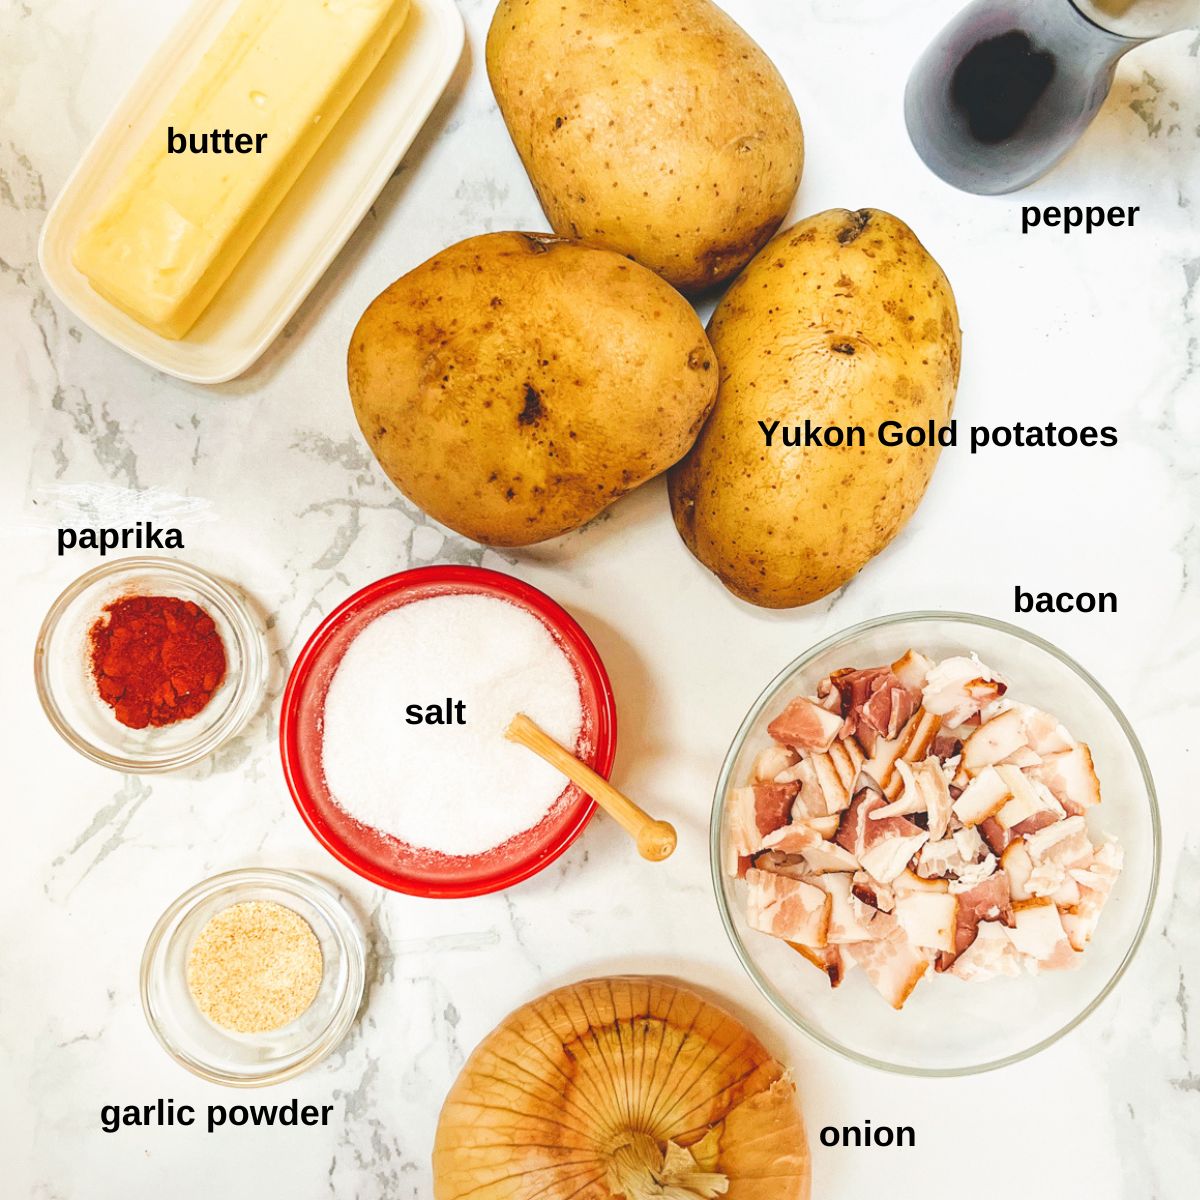 Ingredients for skillet breakfast potatoes.